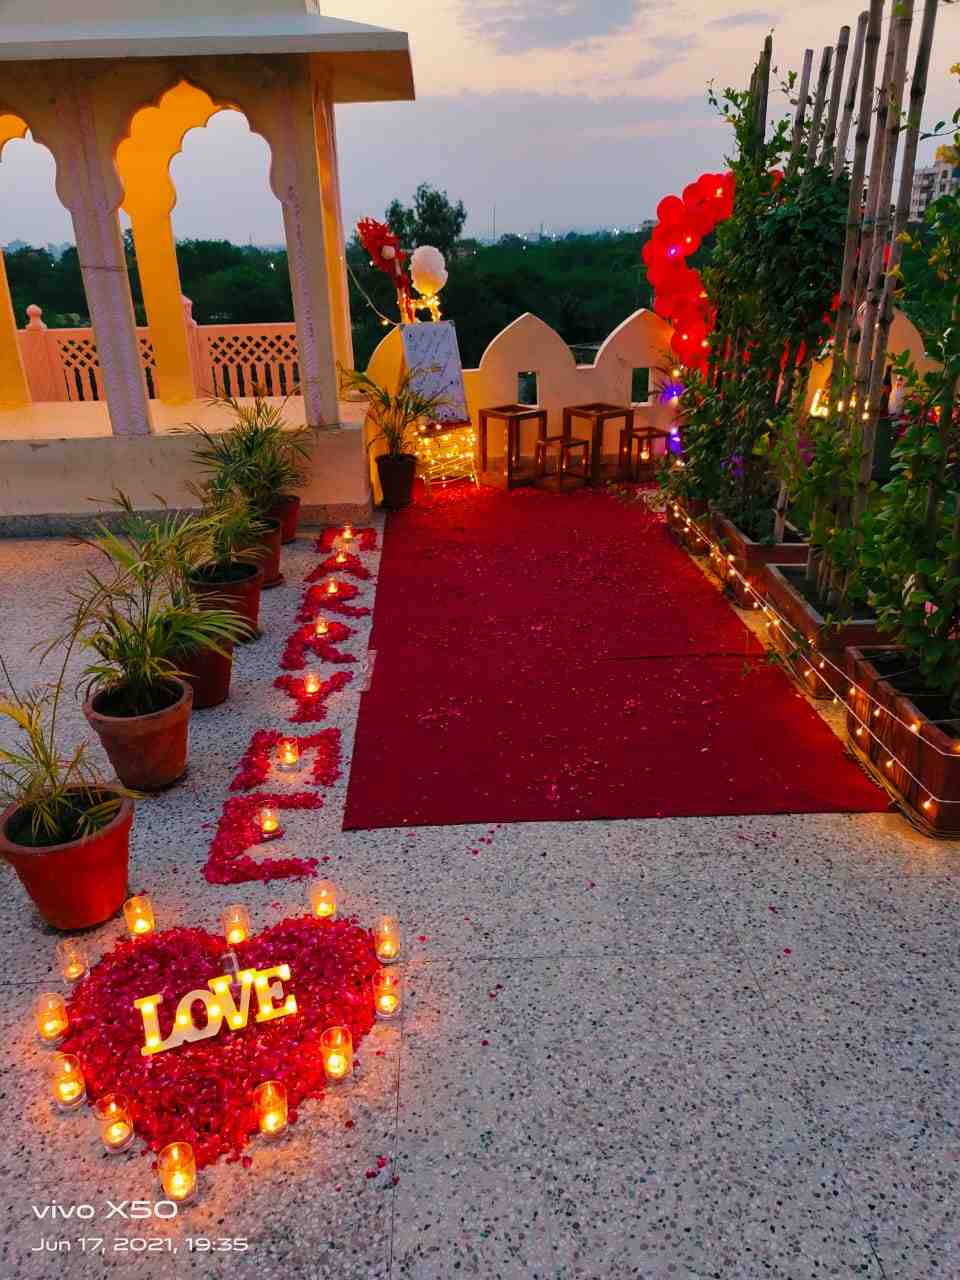 Honeymoon in Jaipur